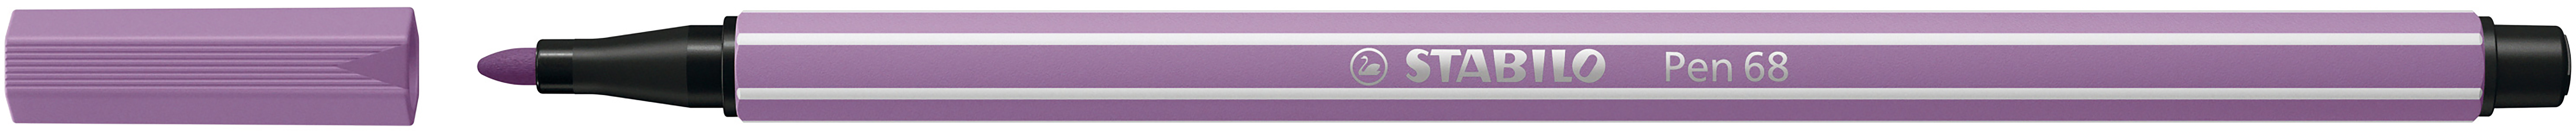 STABILO Stylo Fibre Pen 68 1.0mm 68/62 grey purple